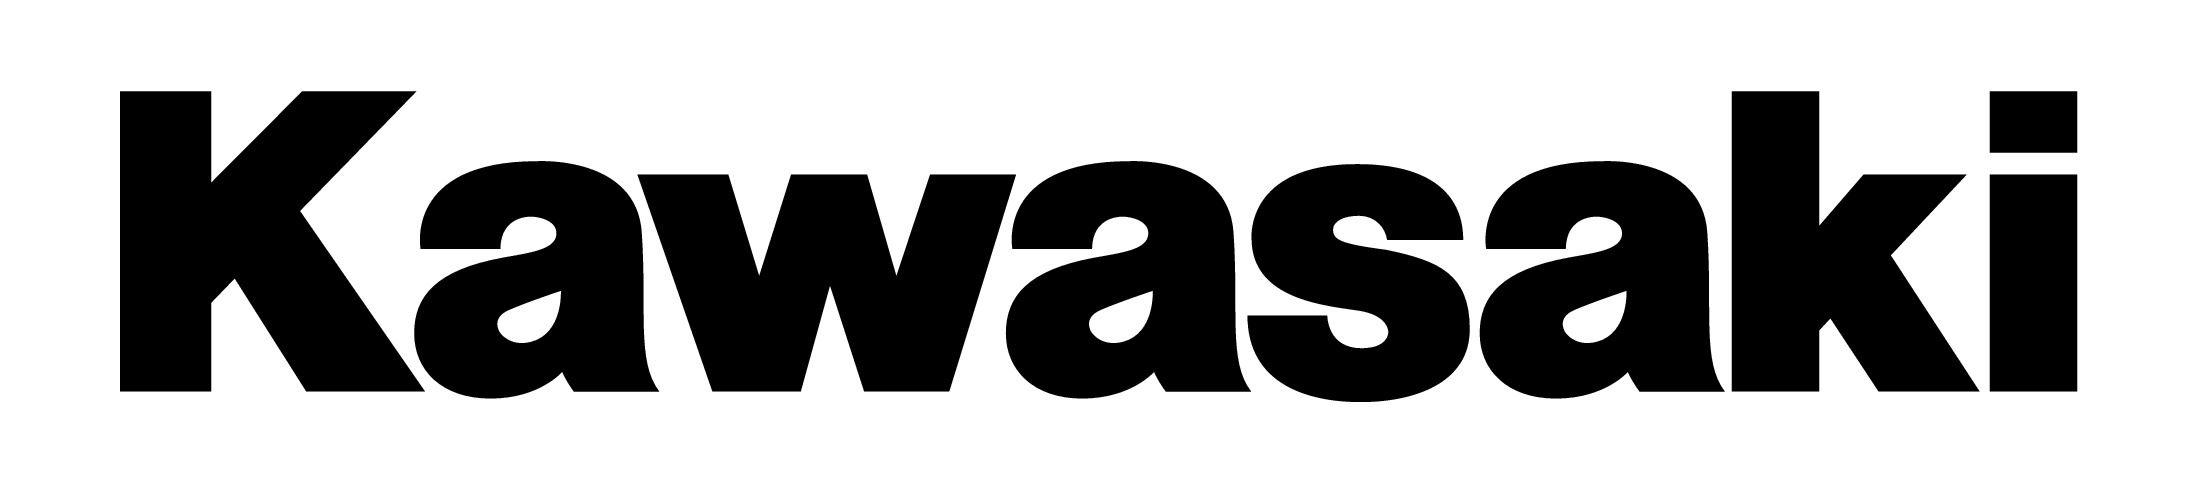 Old Kawasaki Logo - Legal Policies | Kawasaki Legal Information & Policies